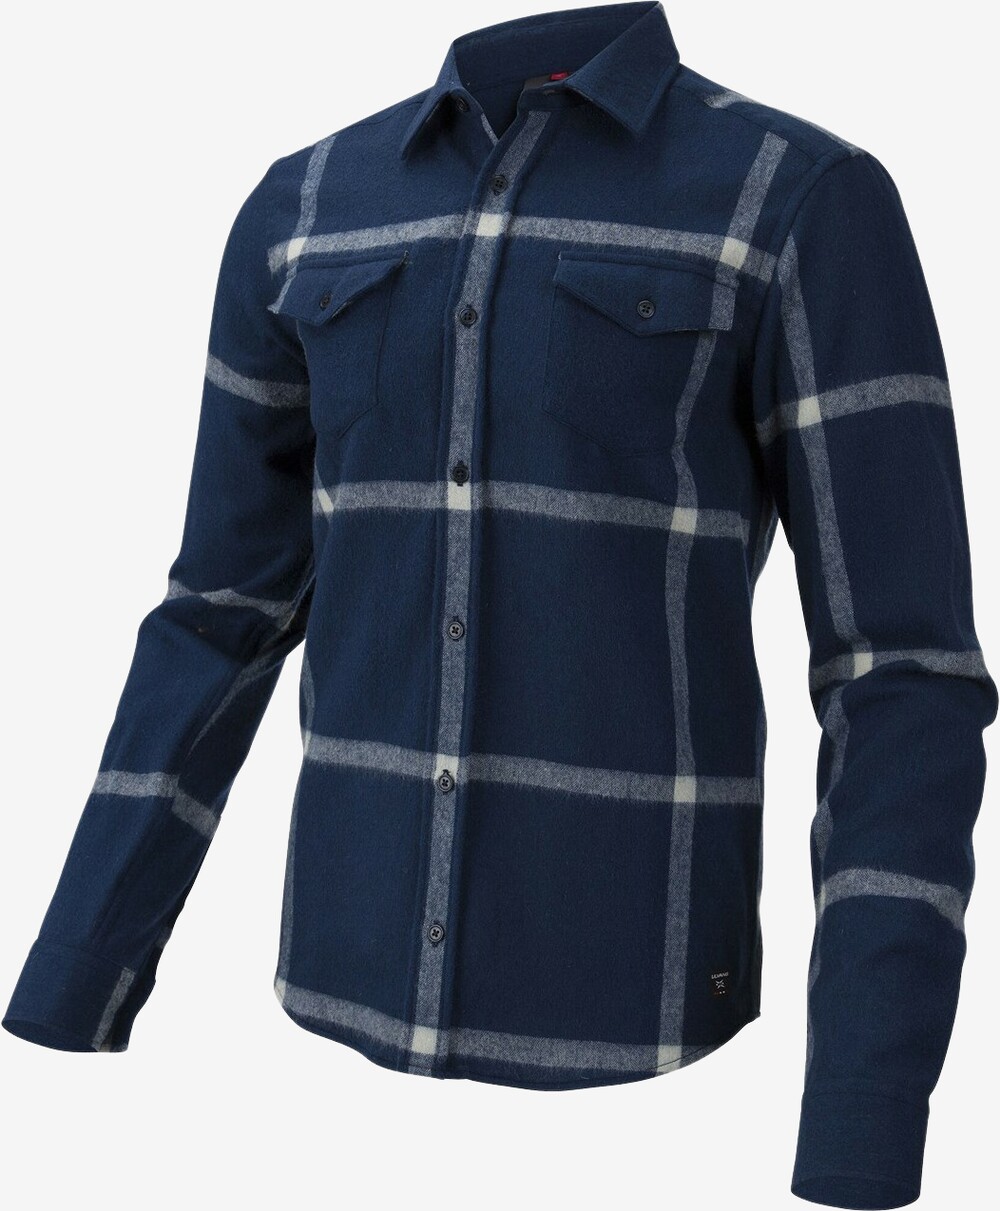 Se Ulvang - Yddin uldskjorte (Blå) - XL hos Friluft.dk